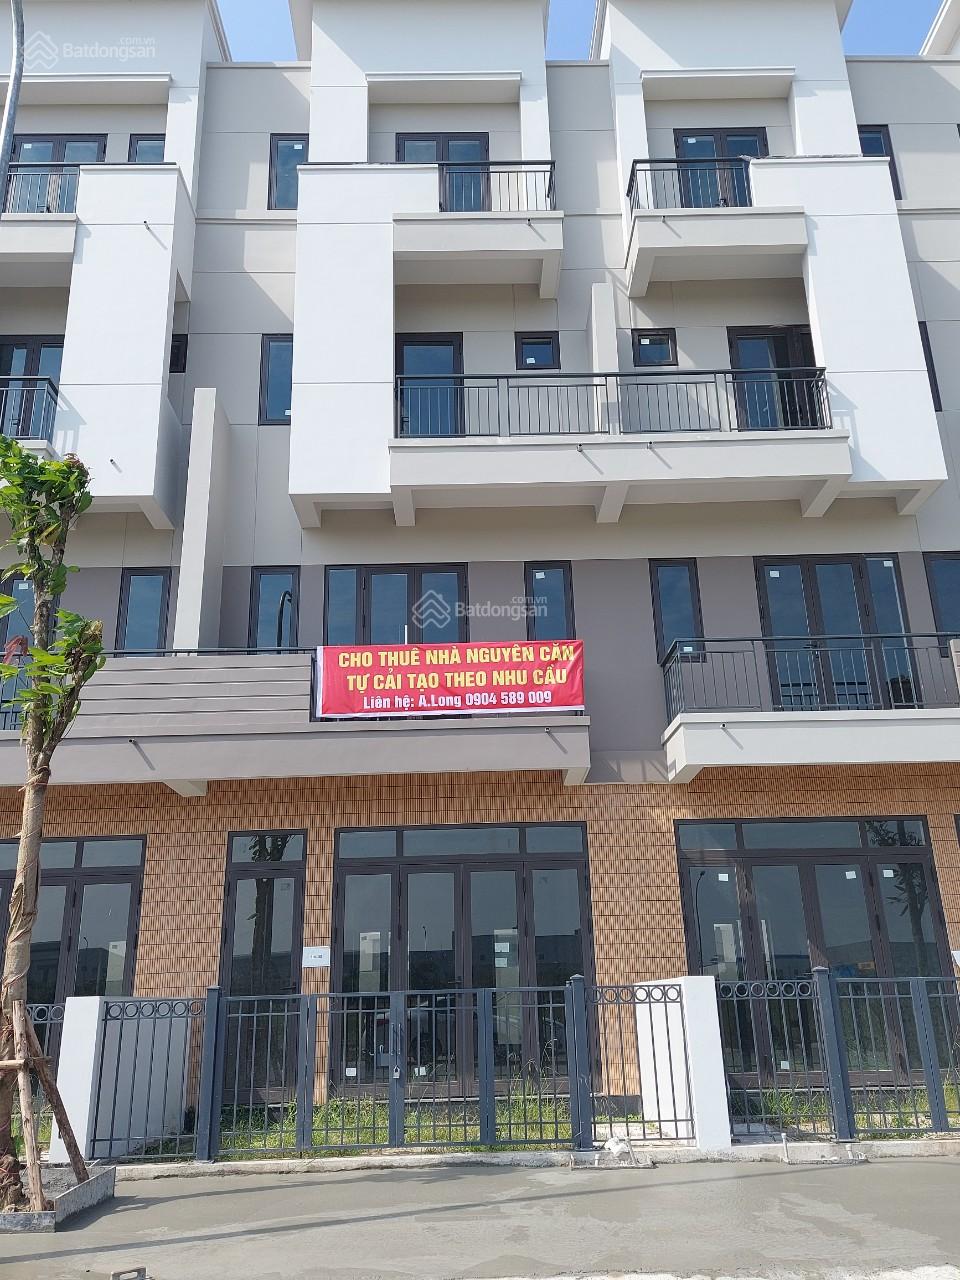 Chính chủ cho thuê Shophouse bên khu công nghiệp Vsip - phân khu Centa Diamond, Từ Sơn, Bắc Ninh